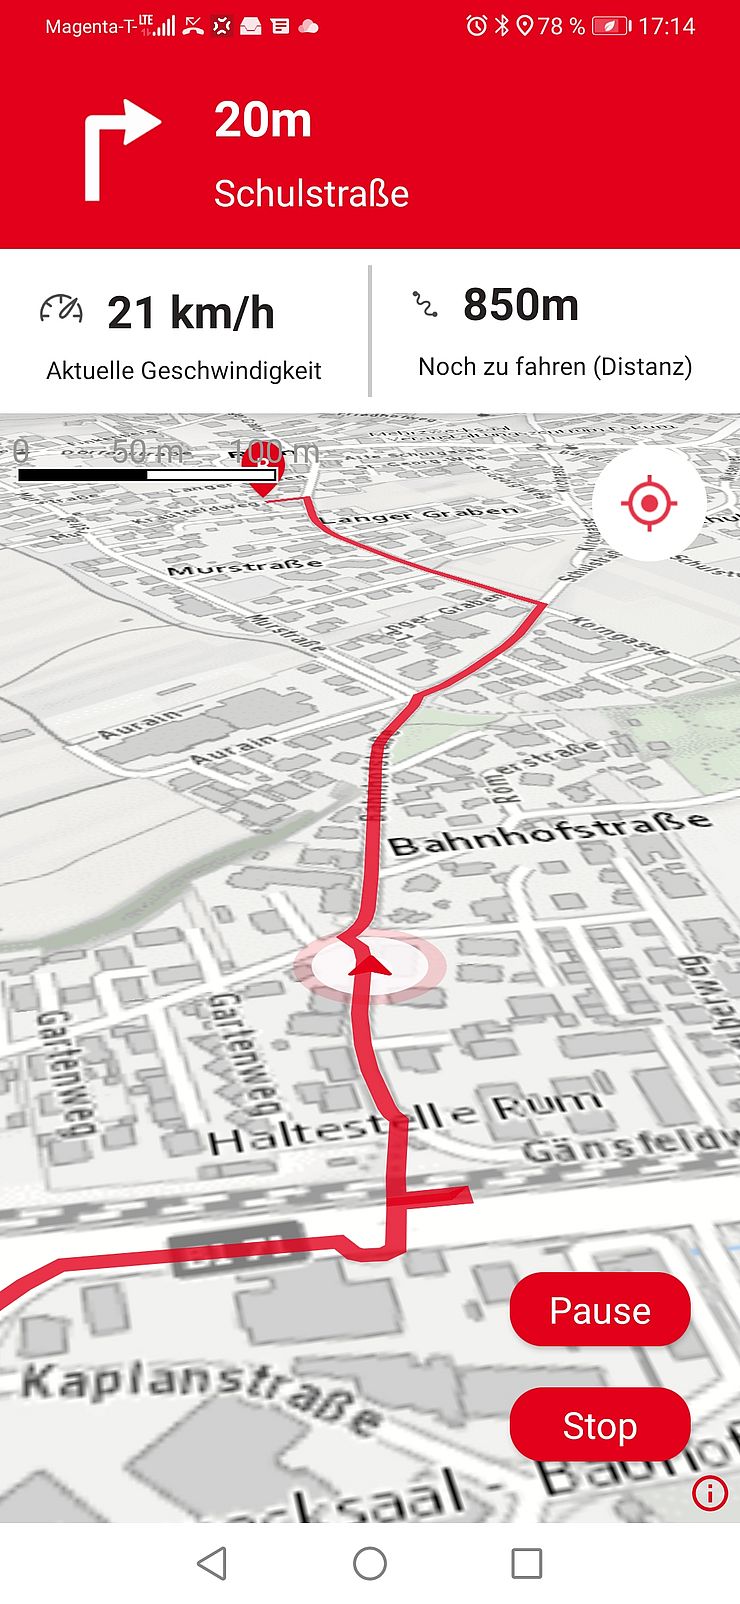 Kartendarstellung einer Route in der Stadt